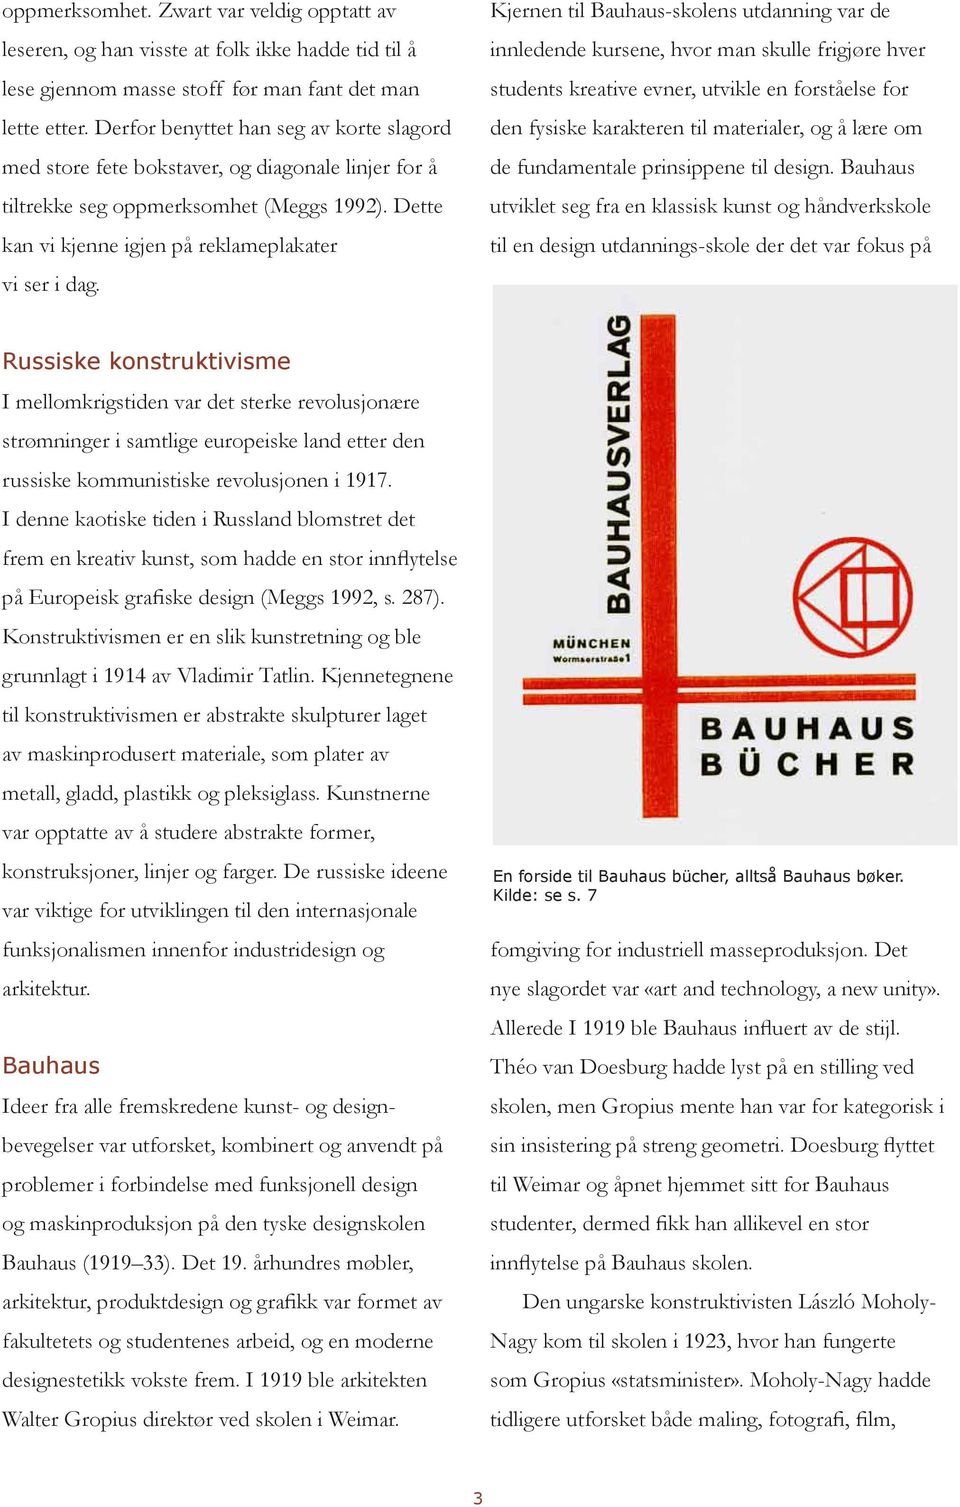 Kjernen til Bauhaus-skolens utdanning var de innledende kursene, hvor man skulle frigjøre hver students kreative evner, utvikle en forståelse for den fysiske karakteren til materialer, og å lære om